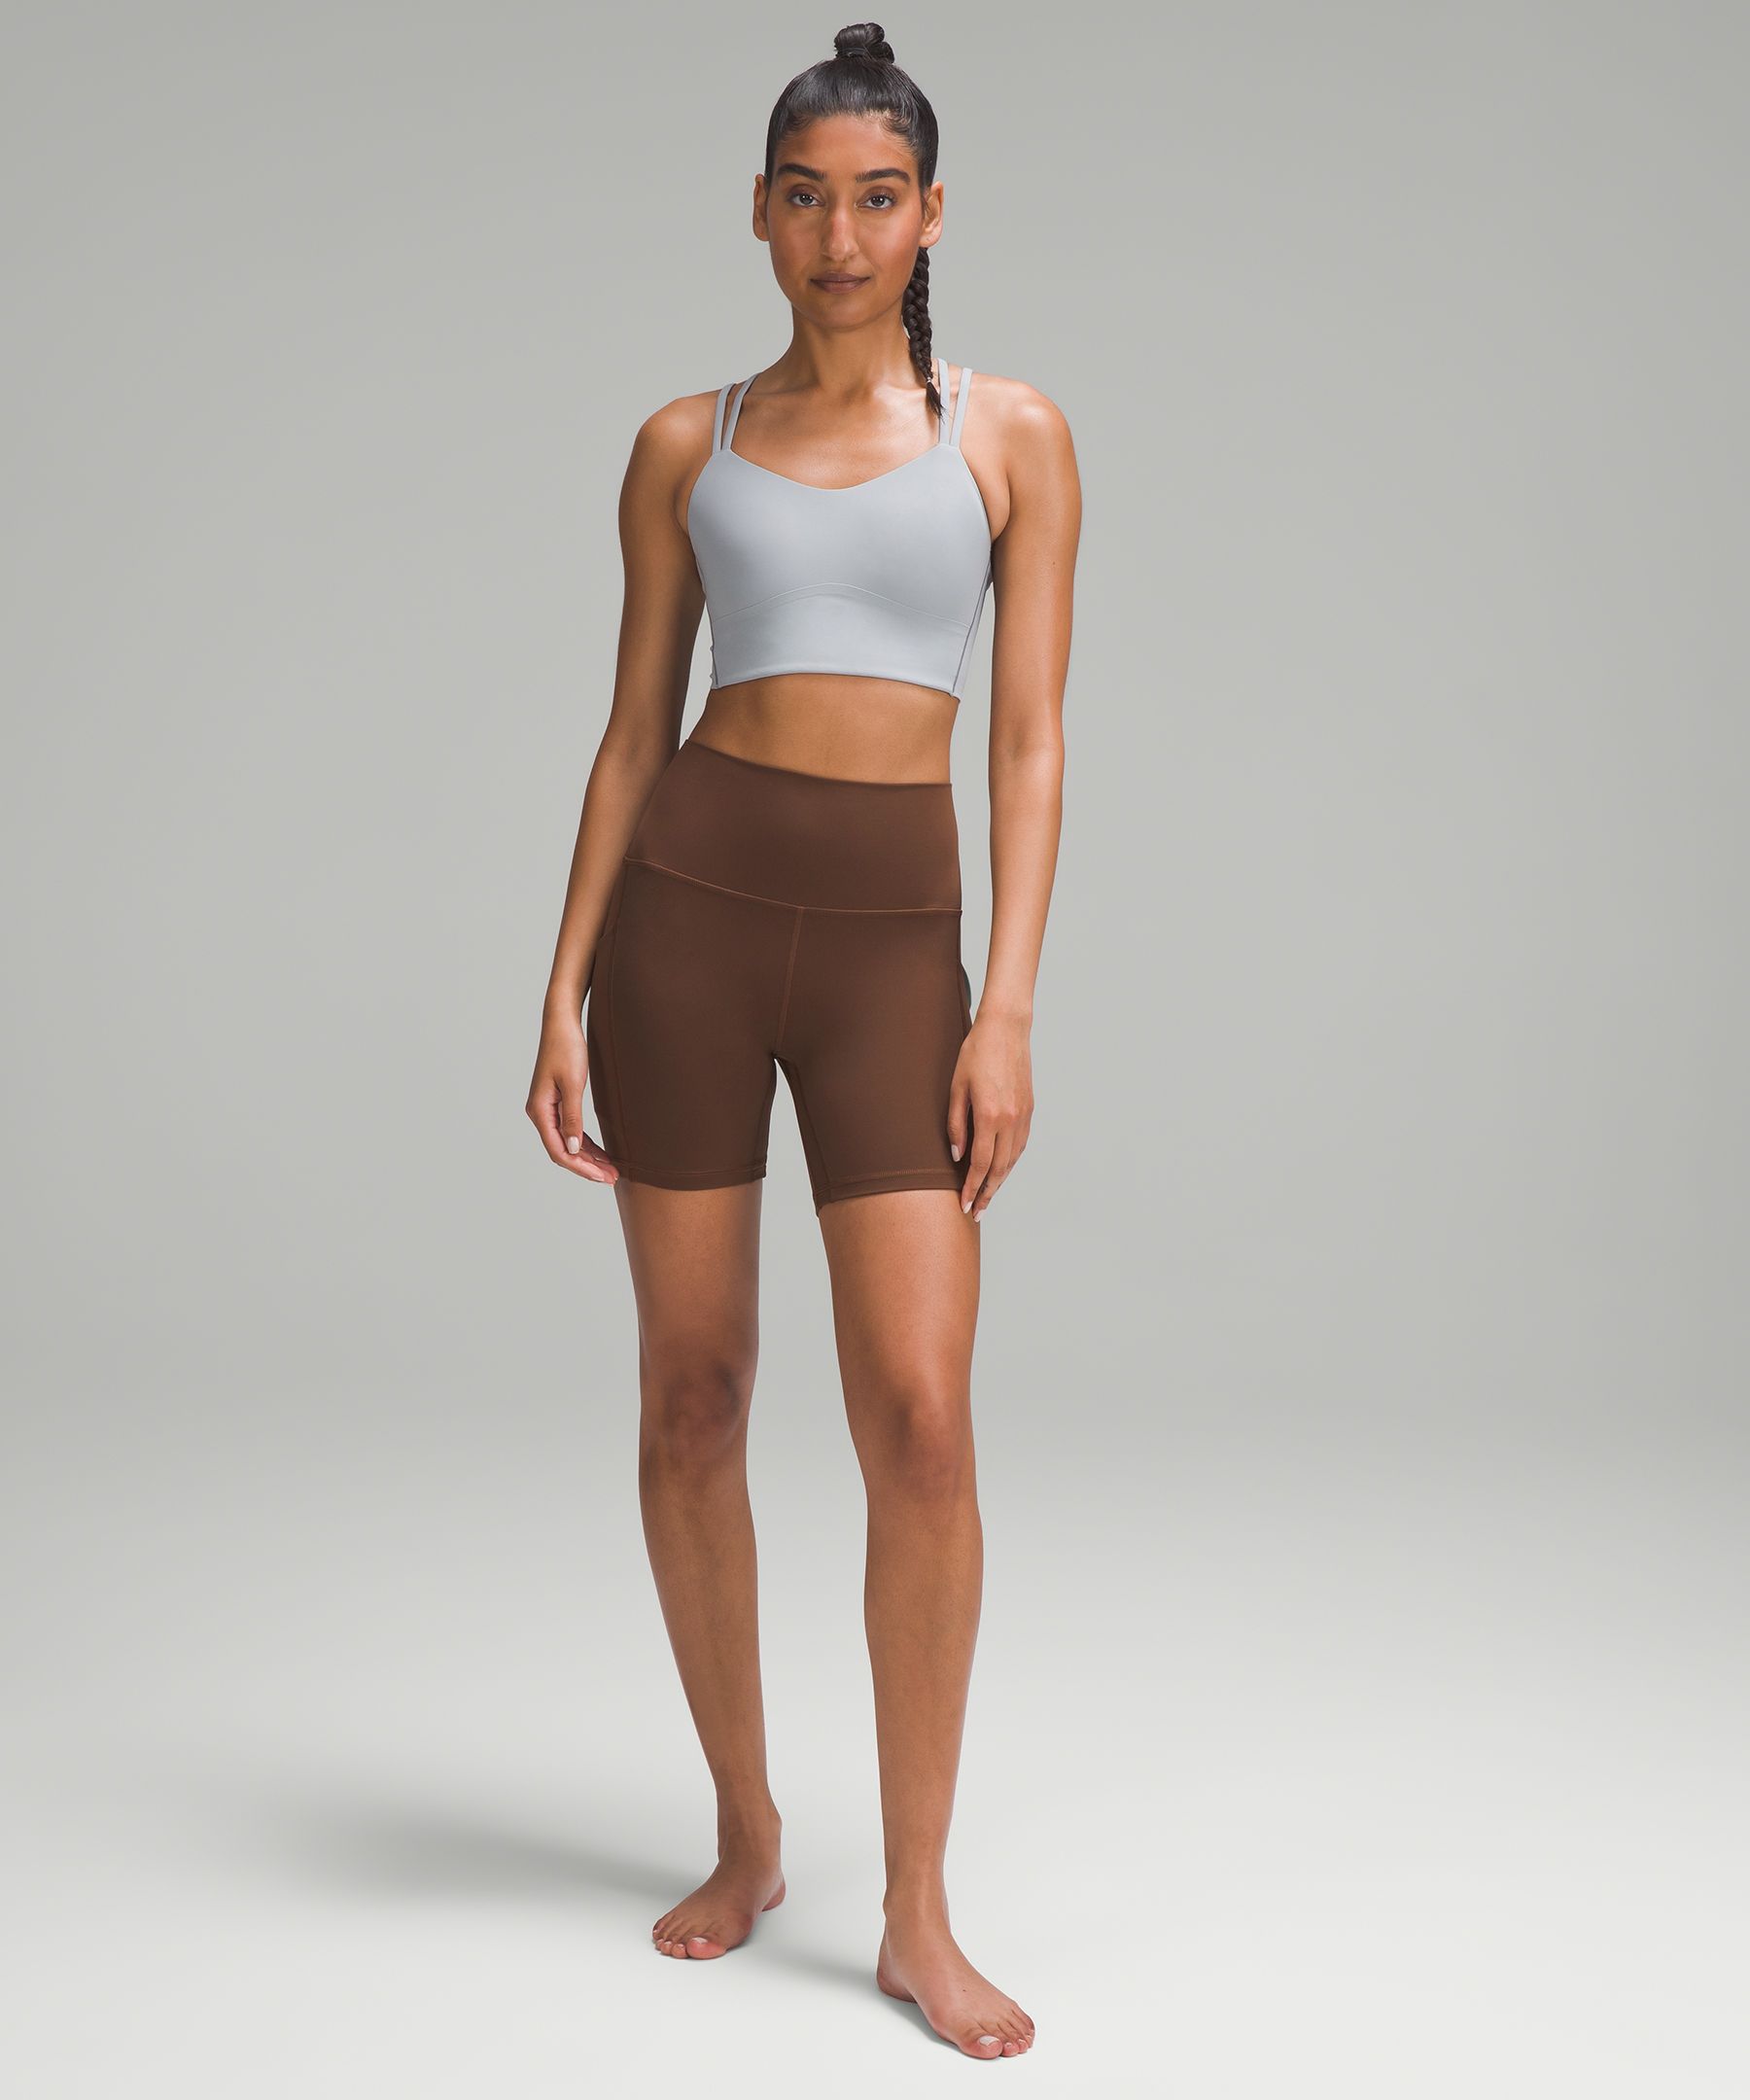 Lululemon 6” Align Shorts in Water Drop, Women's Fashion